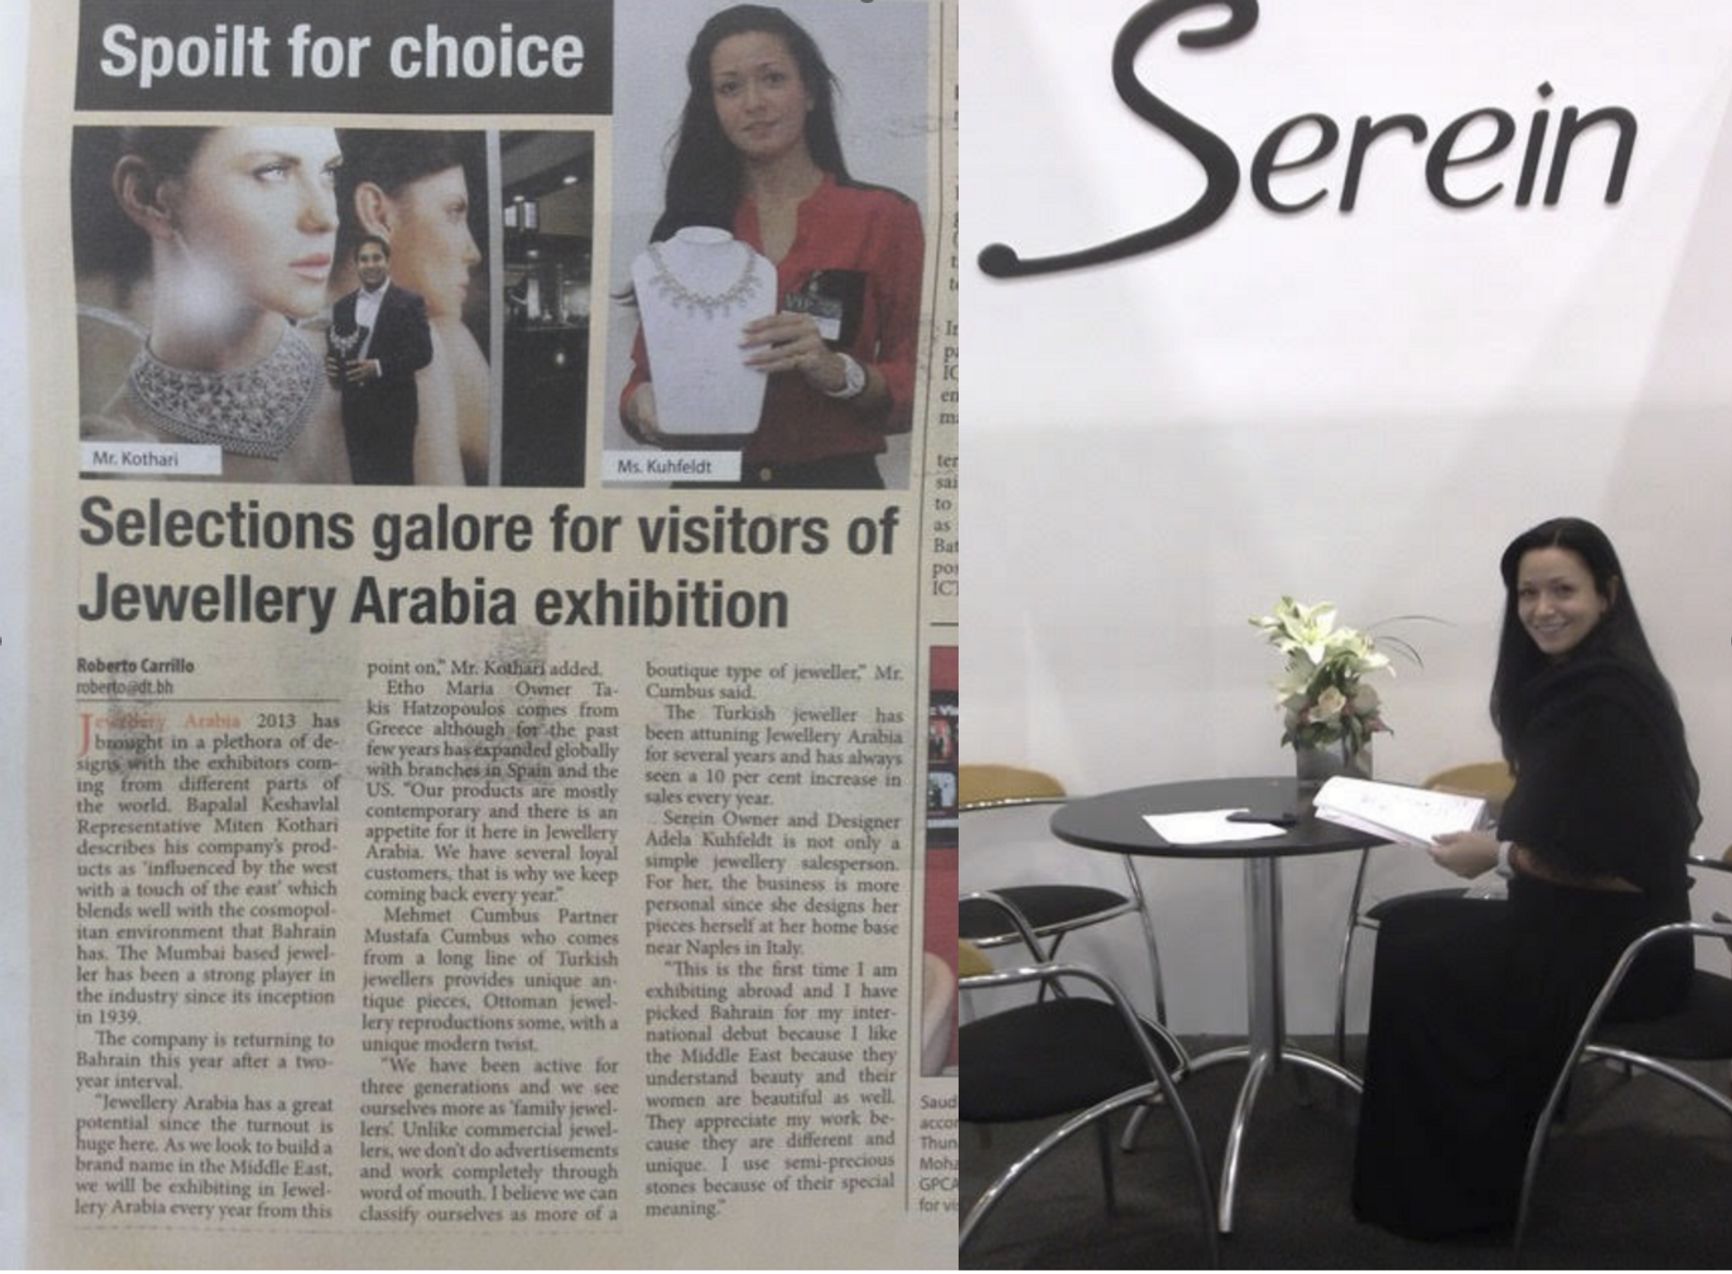 Скан статьи из бахрейнской газеты, в которой упоминается «Мария Адела Ривера Куфельдт», и ее фотография на выставке